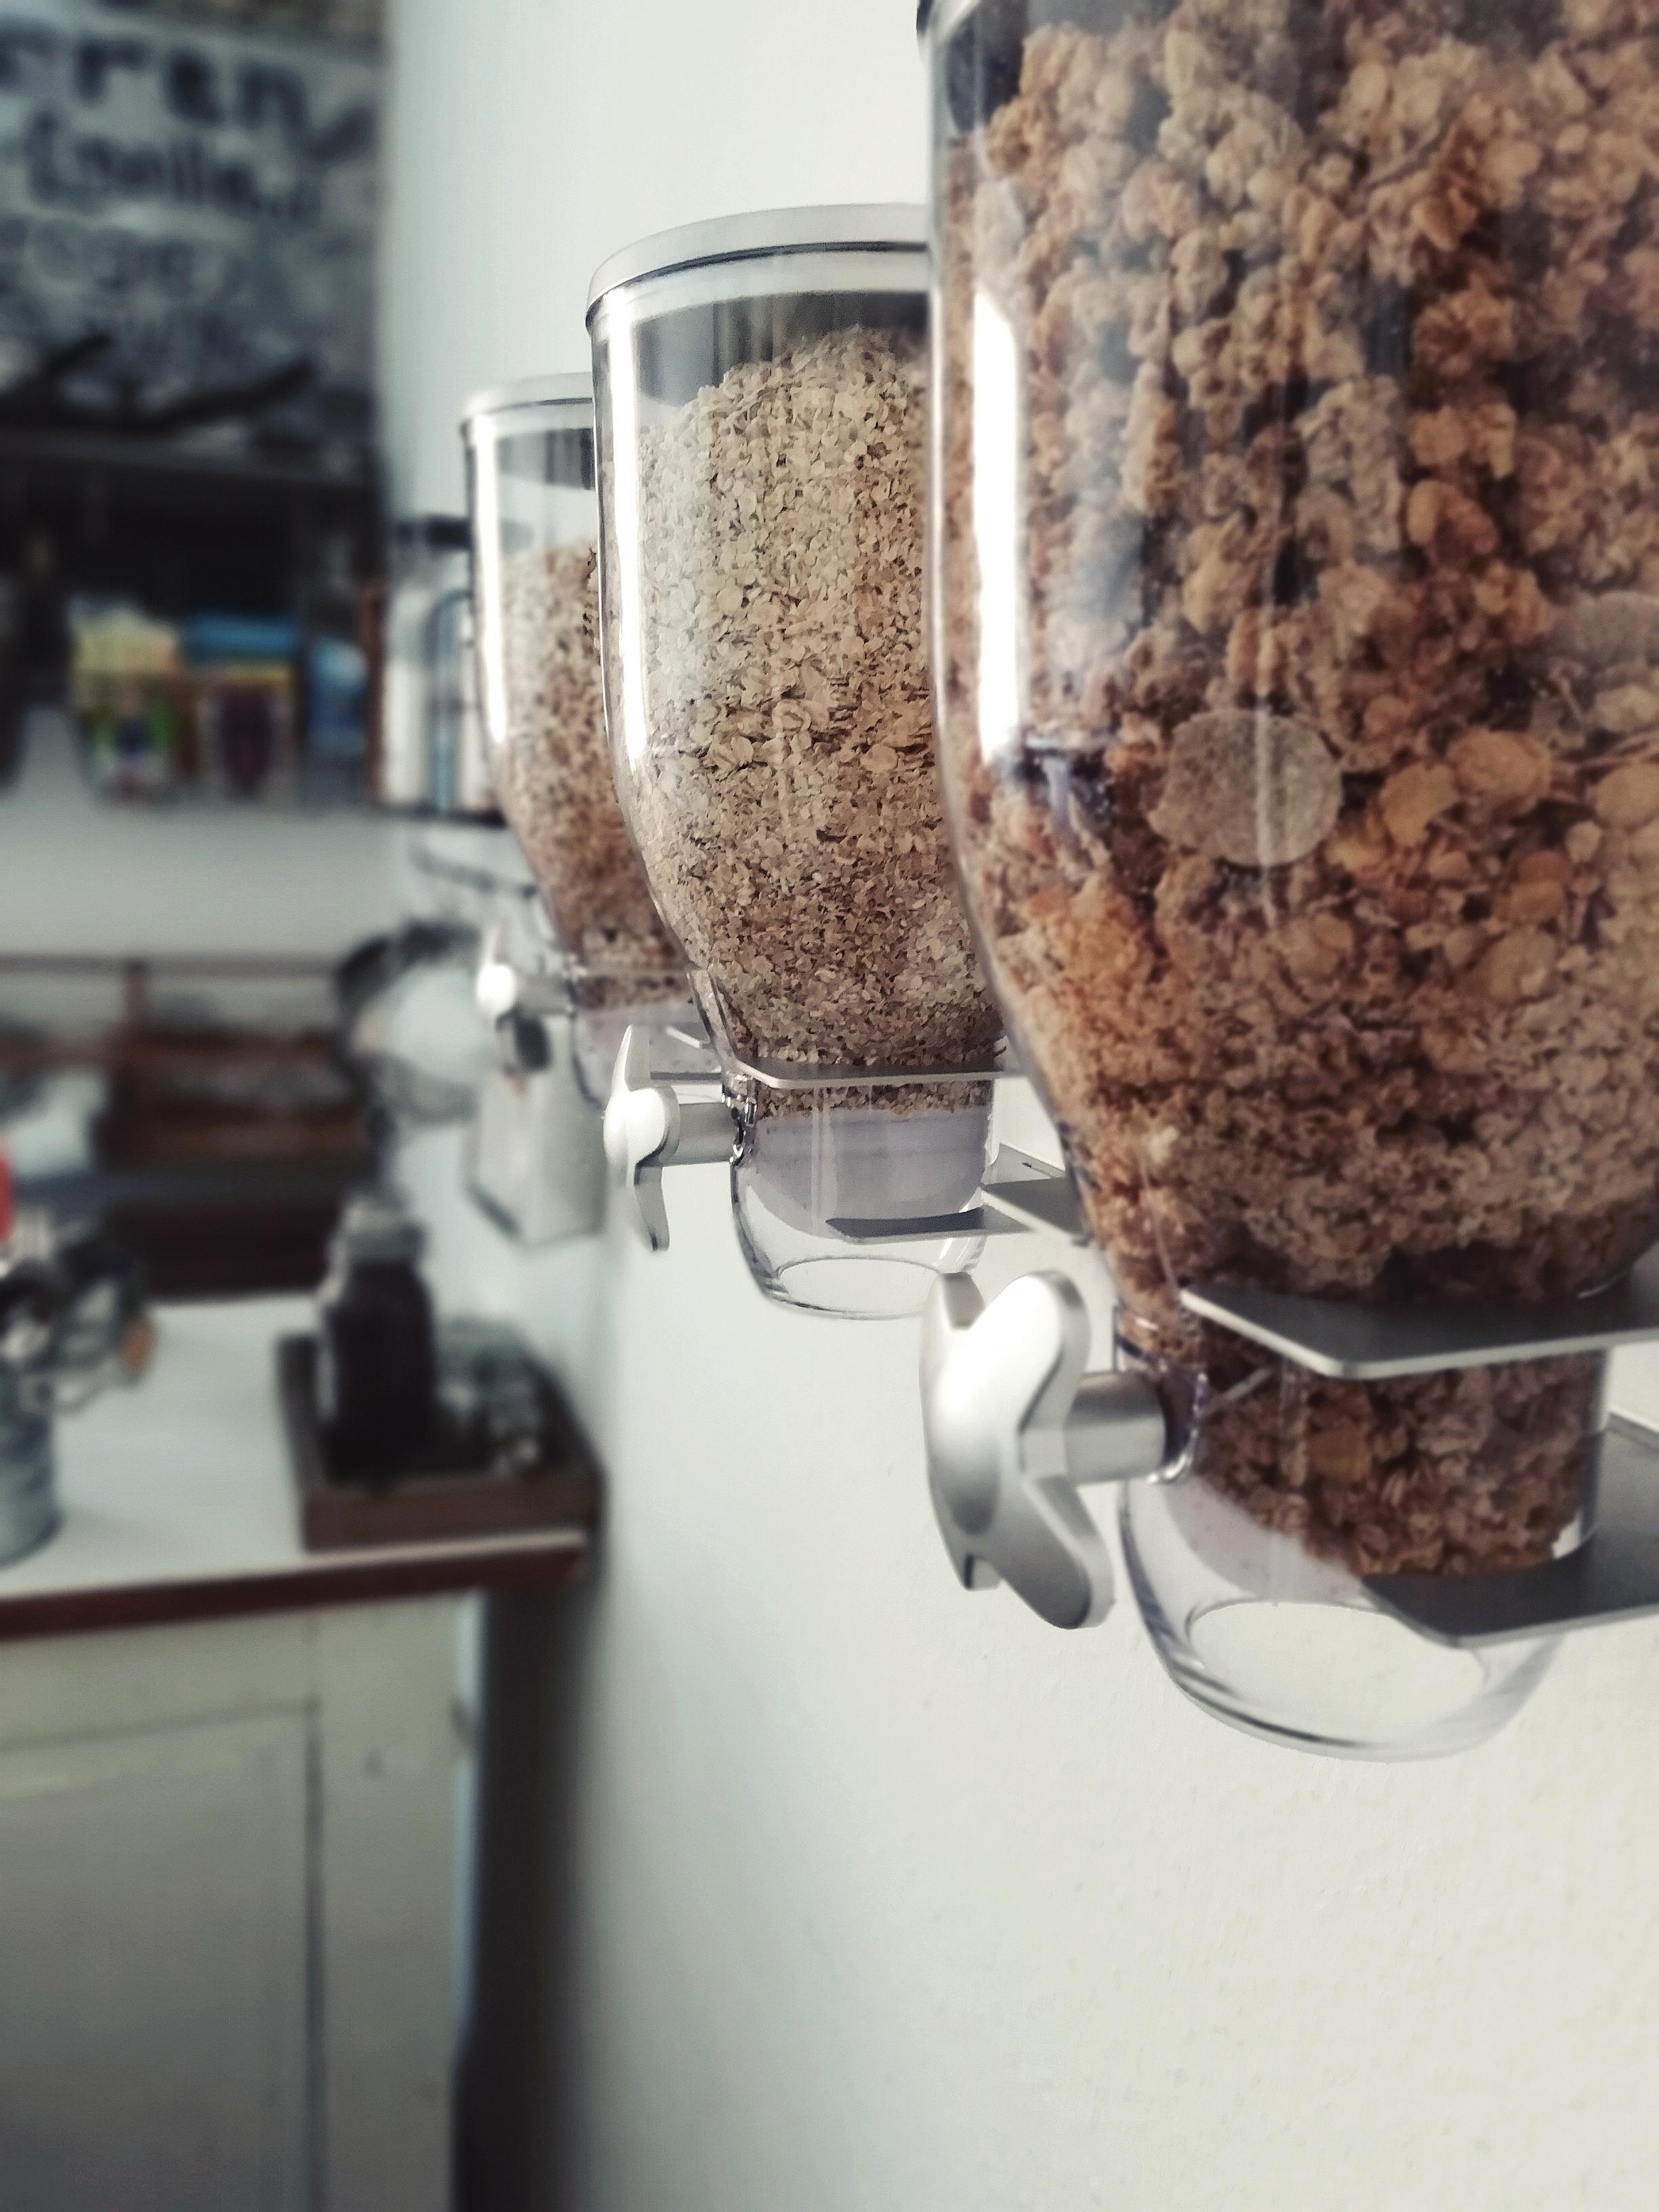 Bei uns gibt es jetzt eine Müslistation an der Wand.
#Praktisch #Cerealien #gesund #Küche #aufBewährung #Behälter 